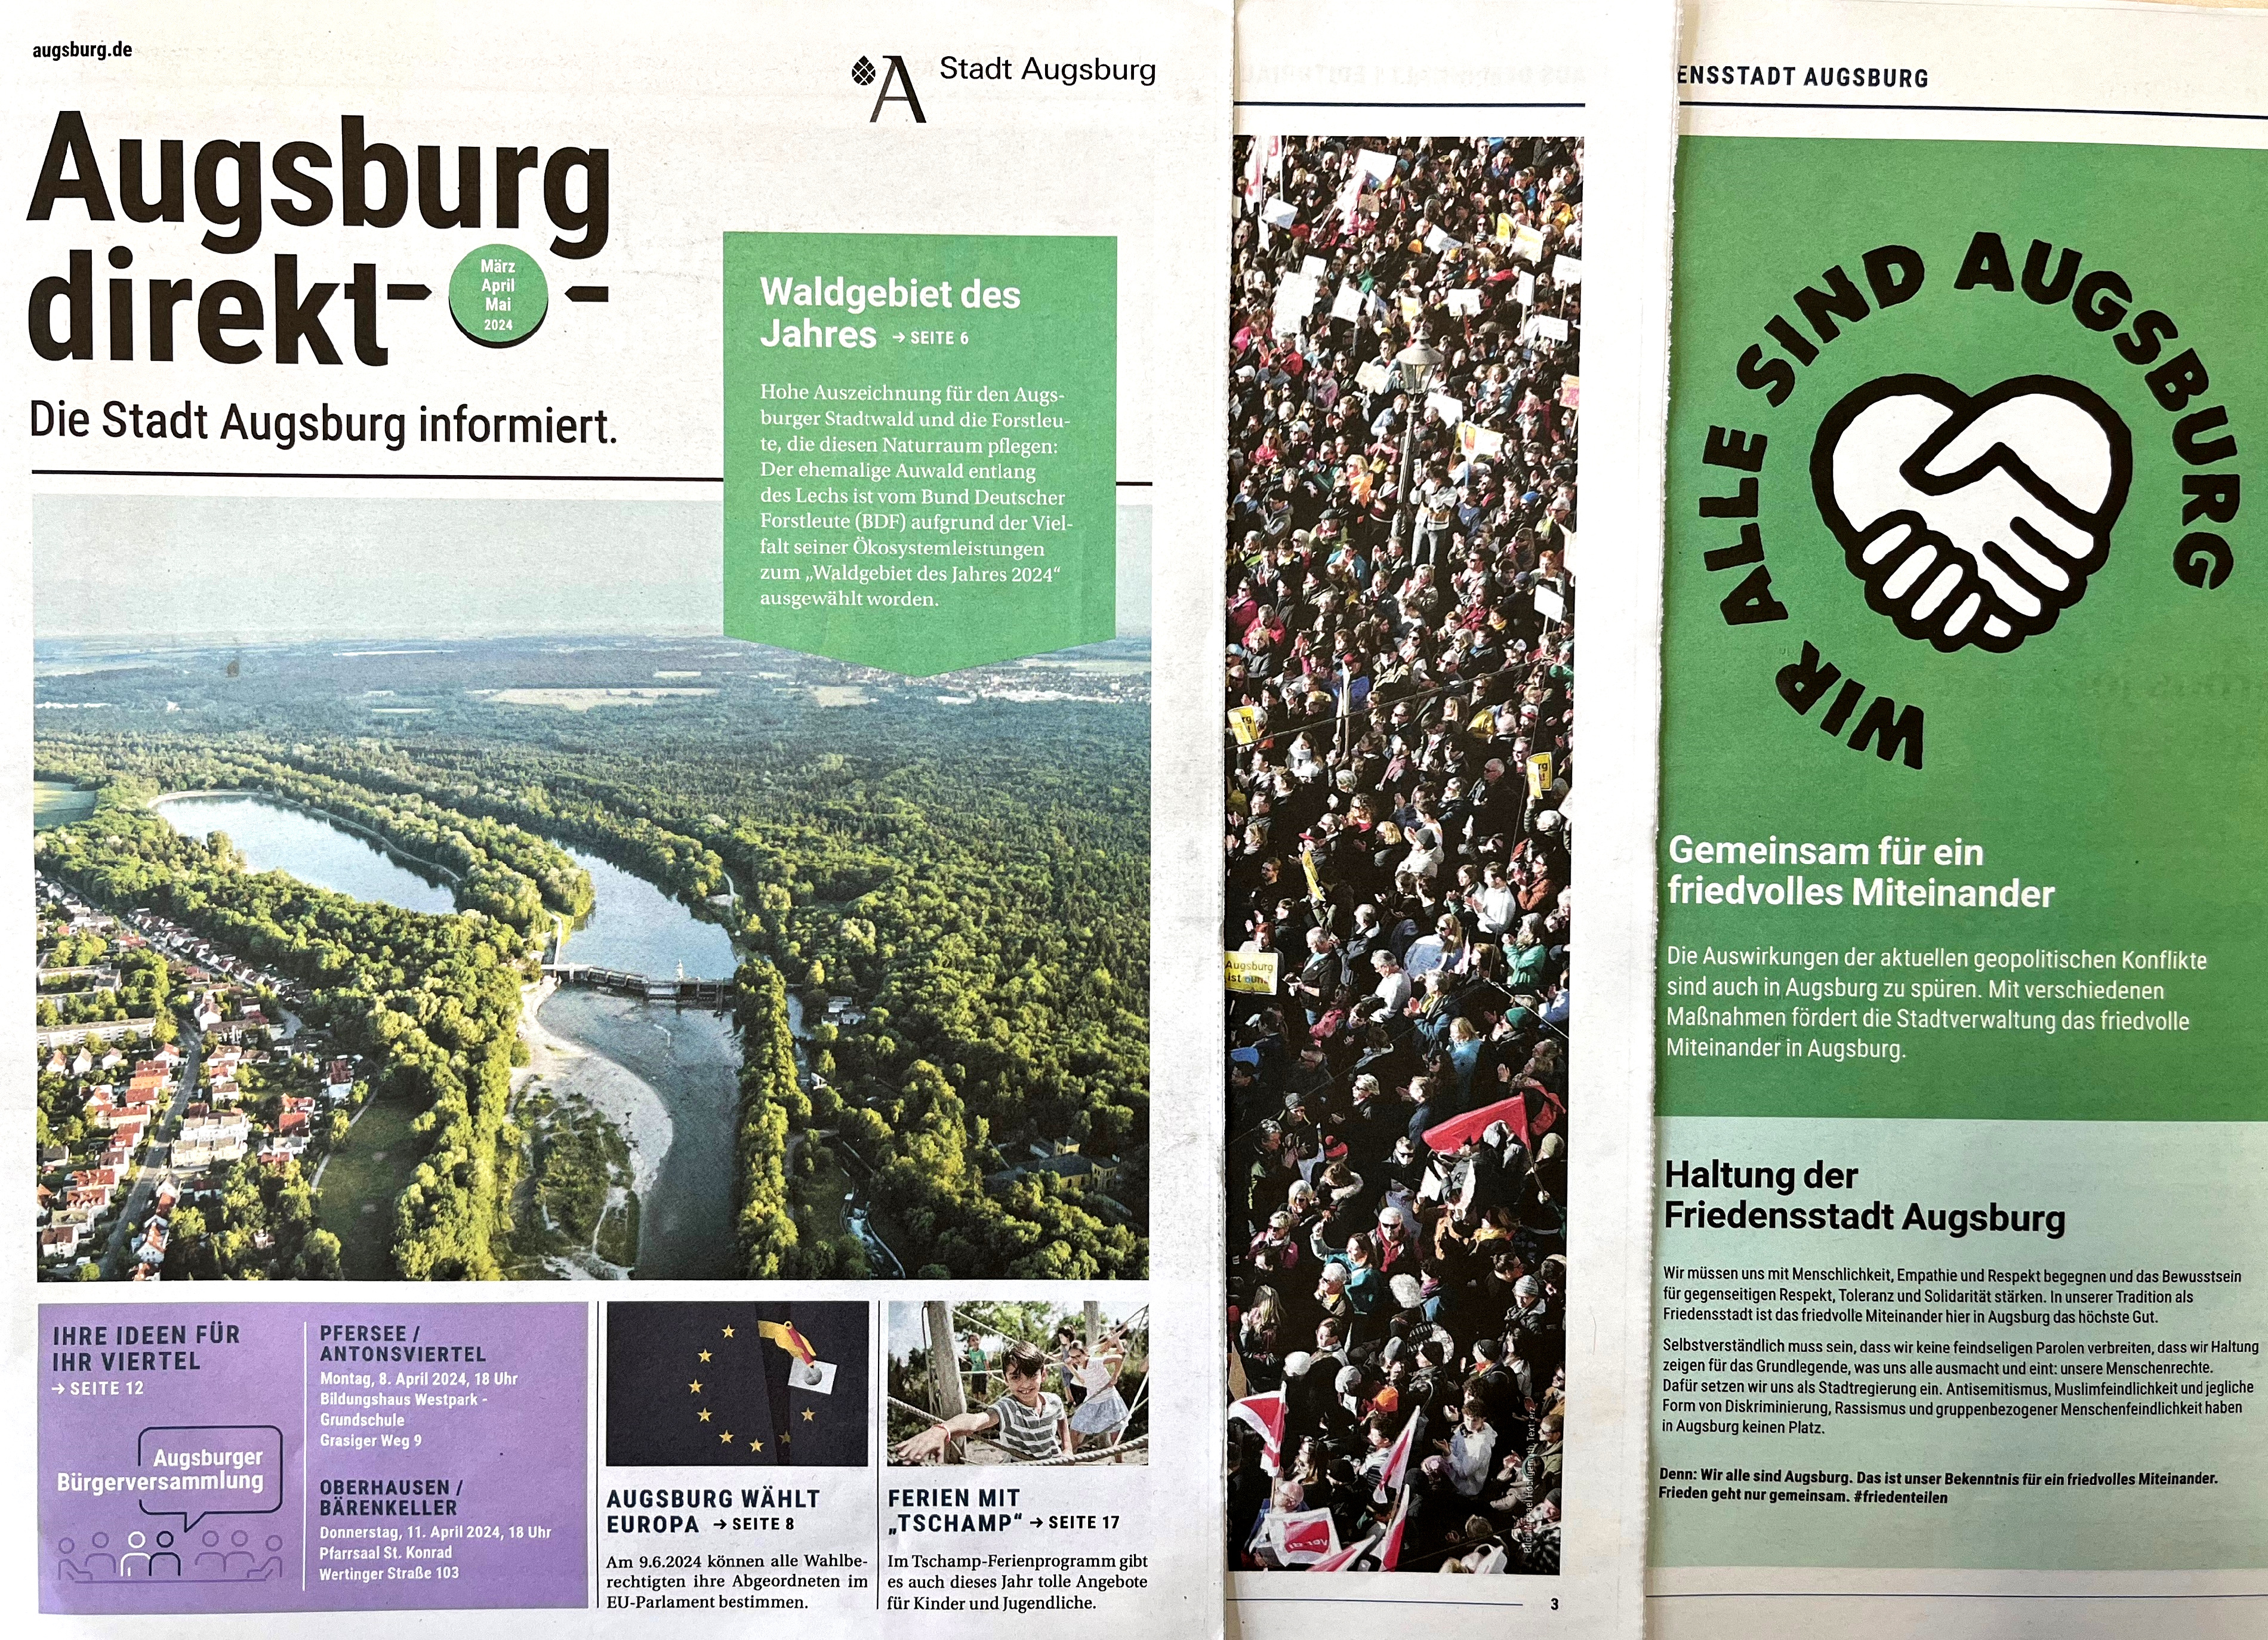 Titelseite und zwei Innenseiten der Zeitung "Augsburg direkt". Auf dem Titel ist ein Bild des Augsburger Stadtwalds von oben zu sehen